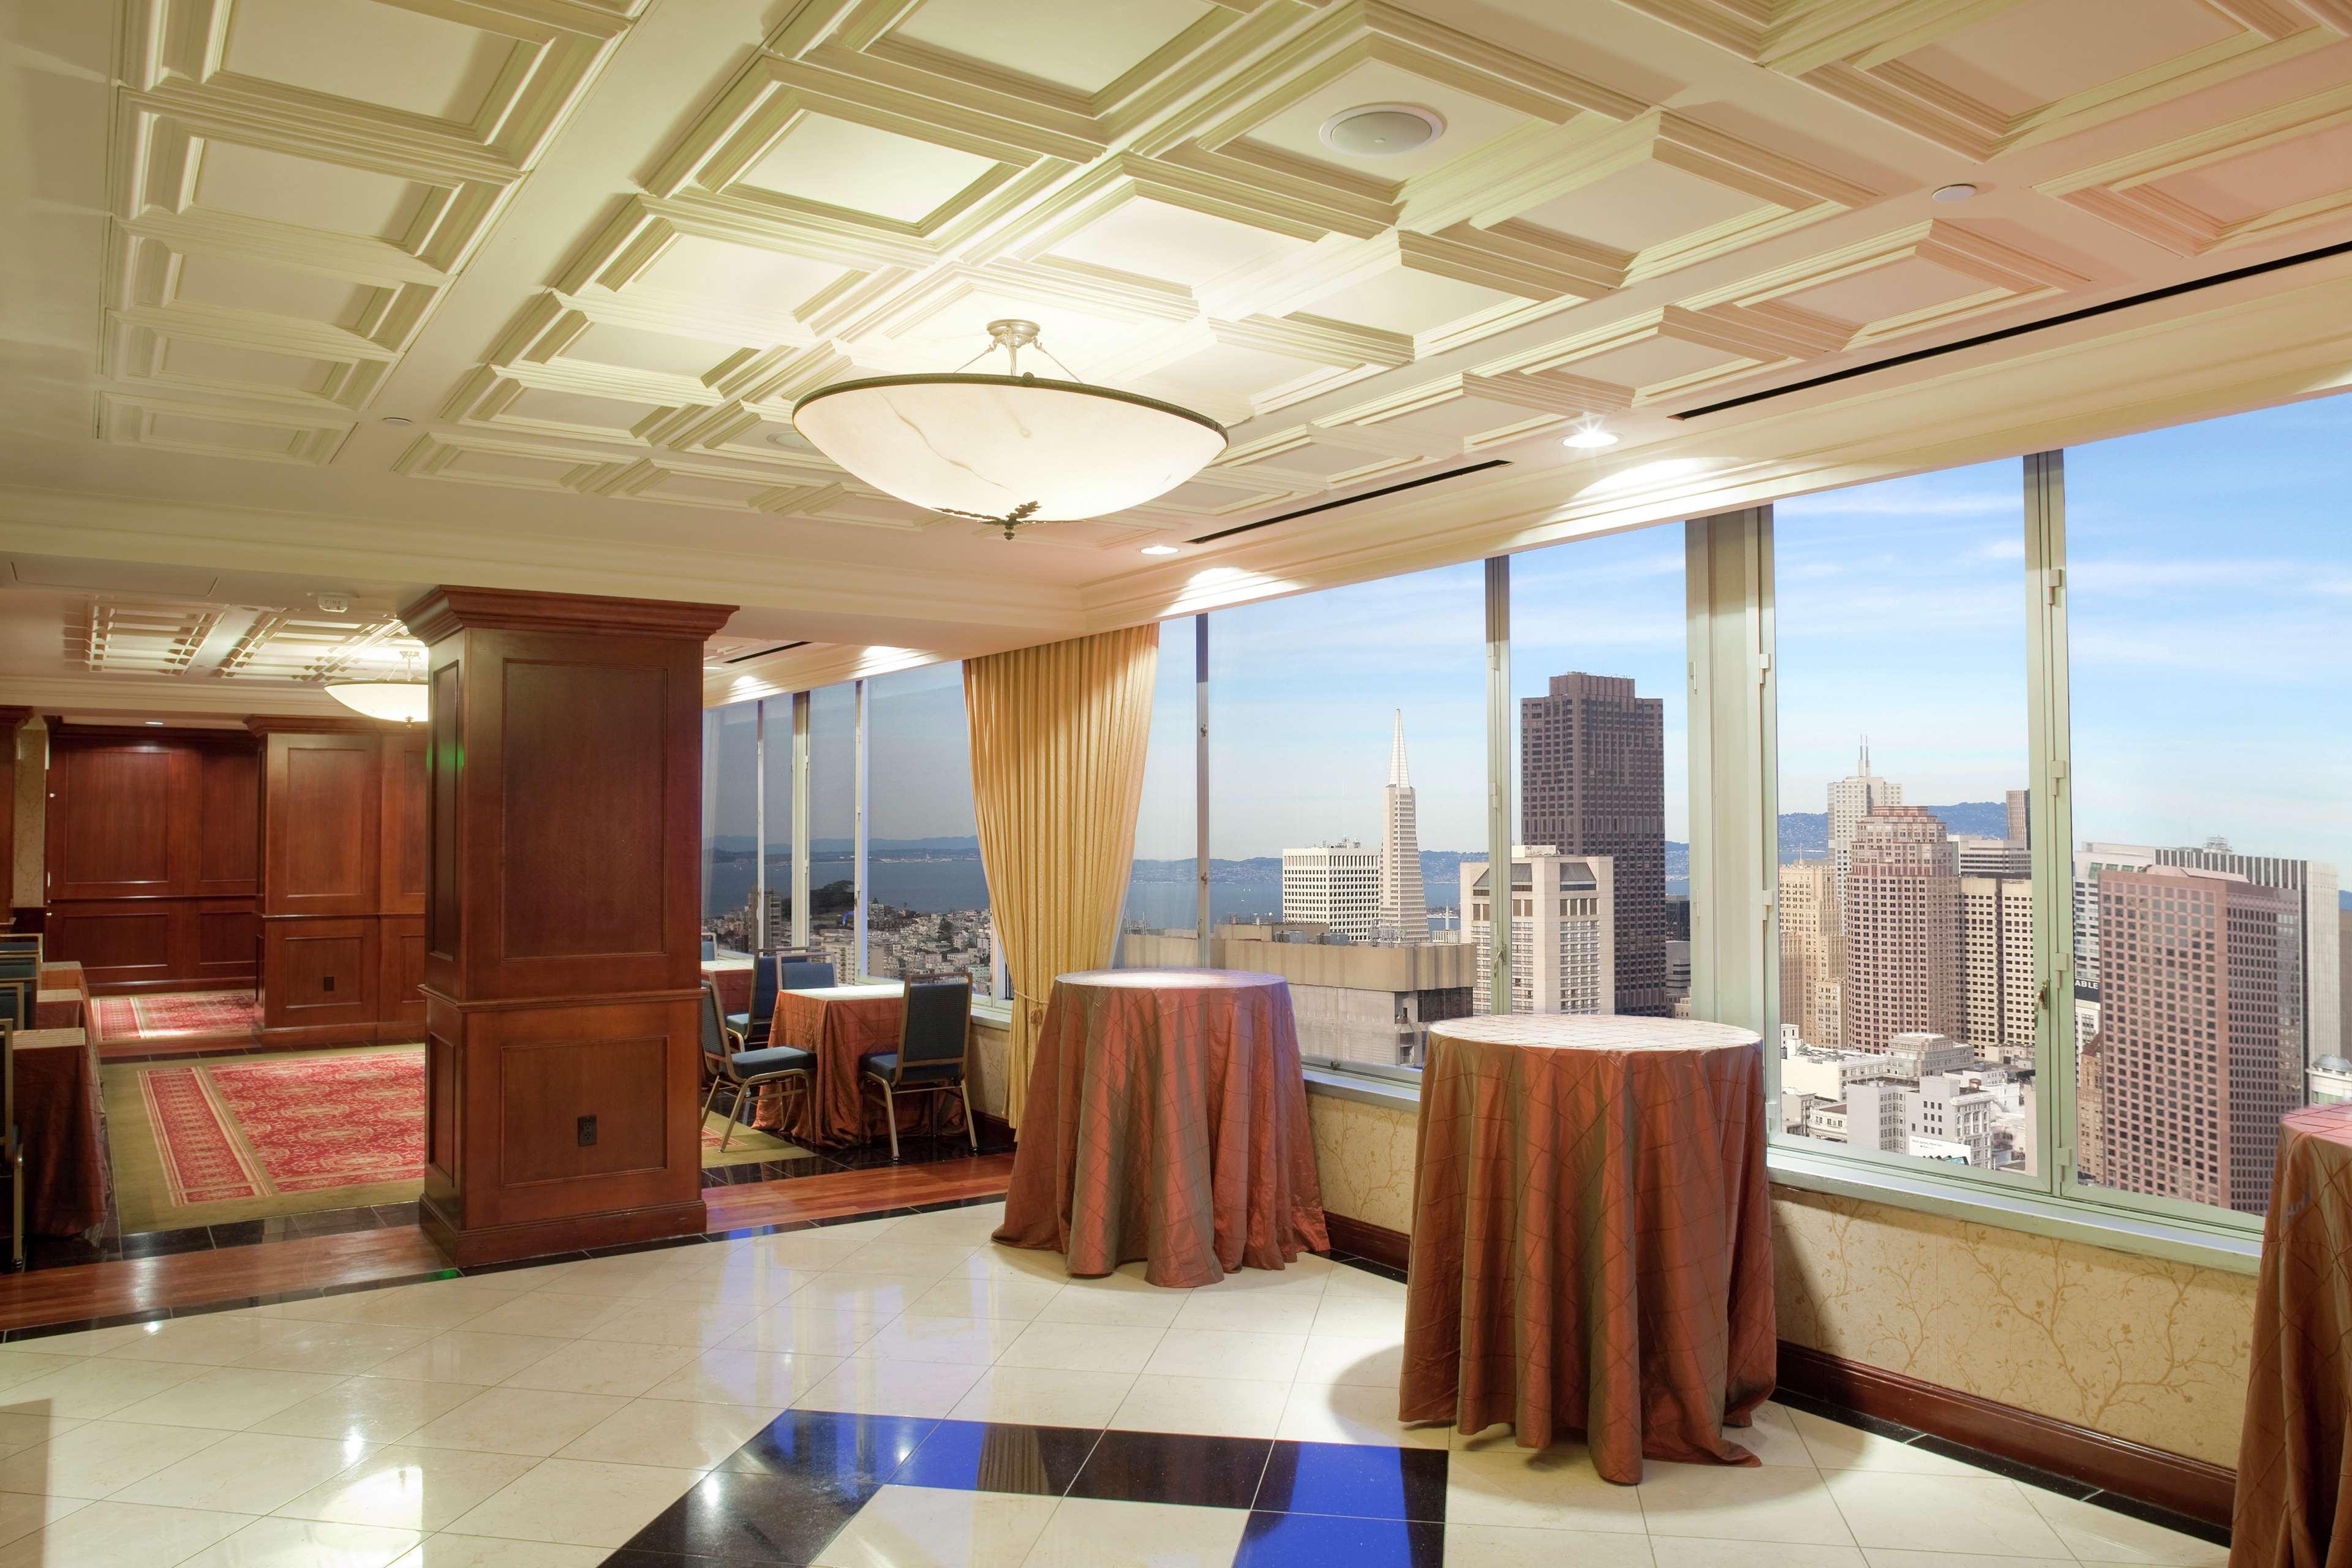 ฮิลตั้น ซาน ฟรานซิสโก ยูเนี่ยน แสควร์ โฮเต็ล Hotel ซานฟรานซิสโก ภายใน รูปภาพ